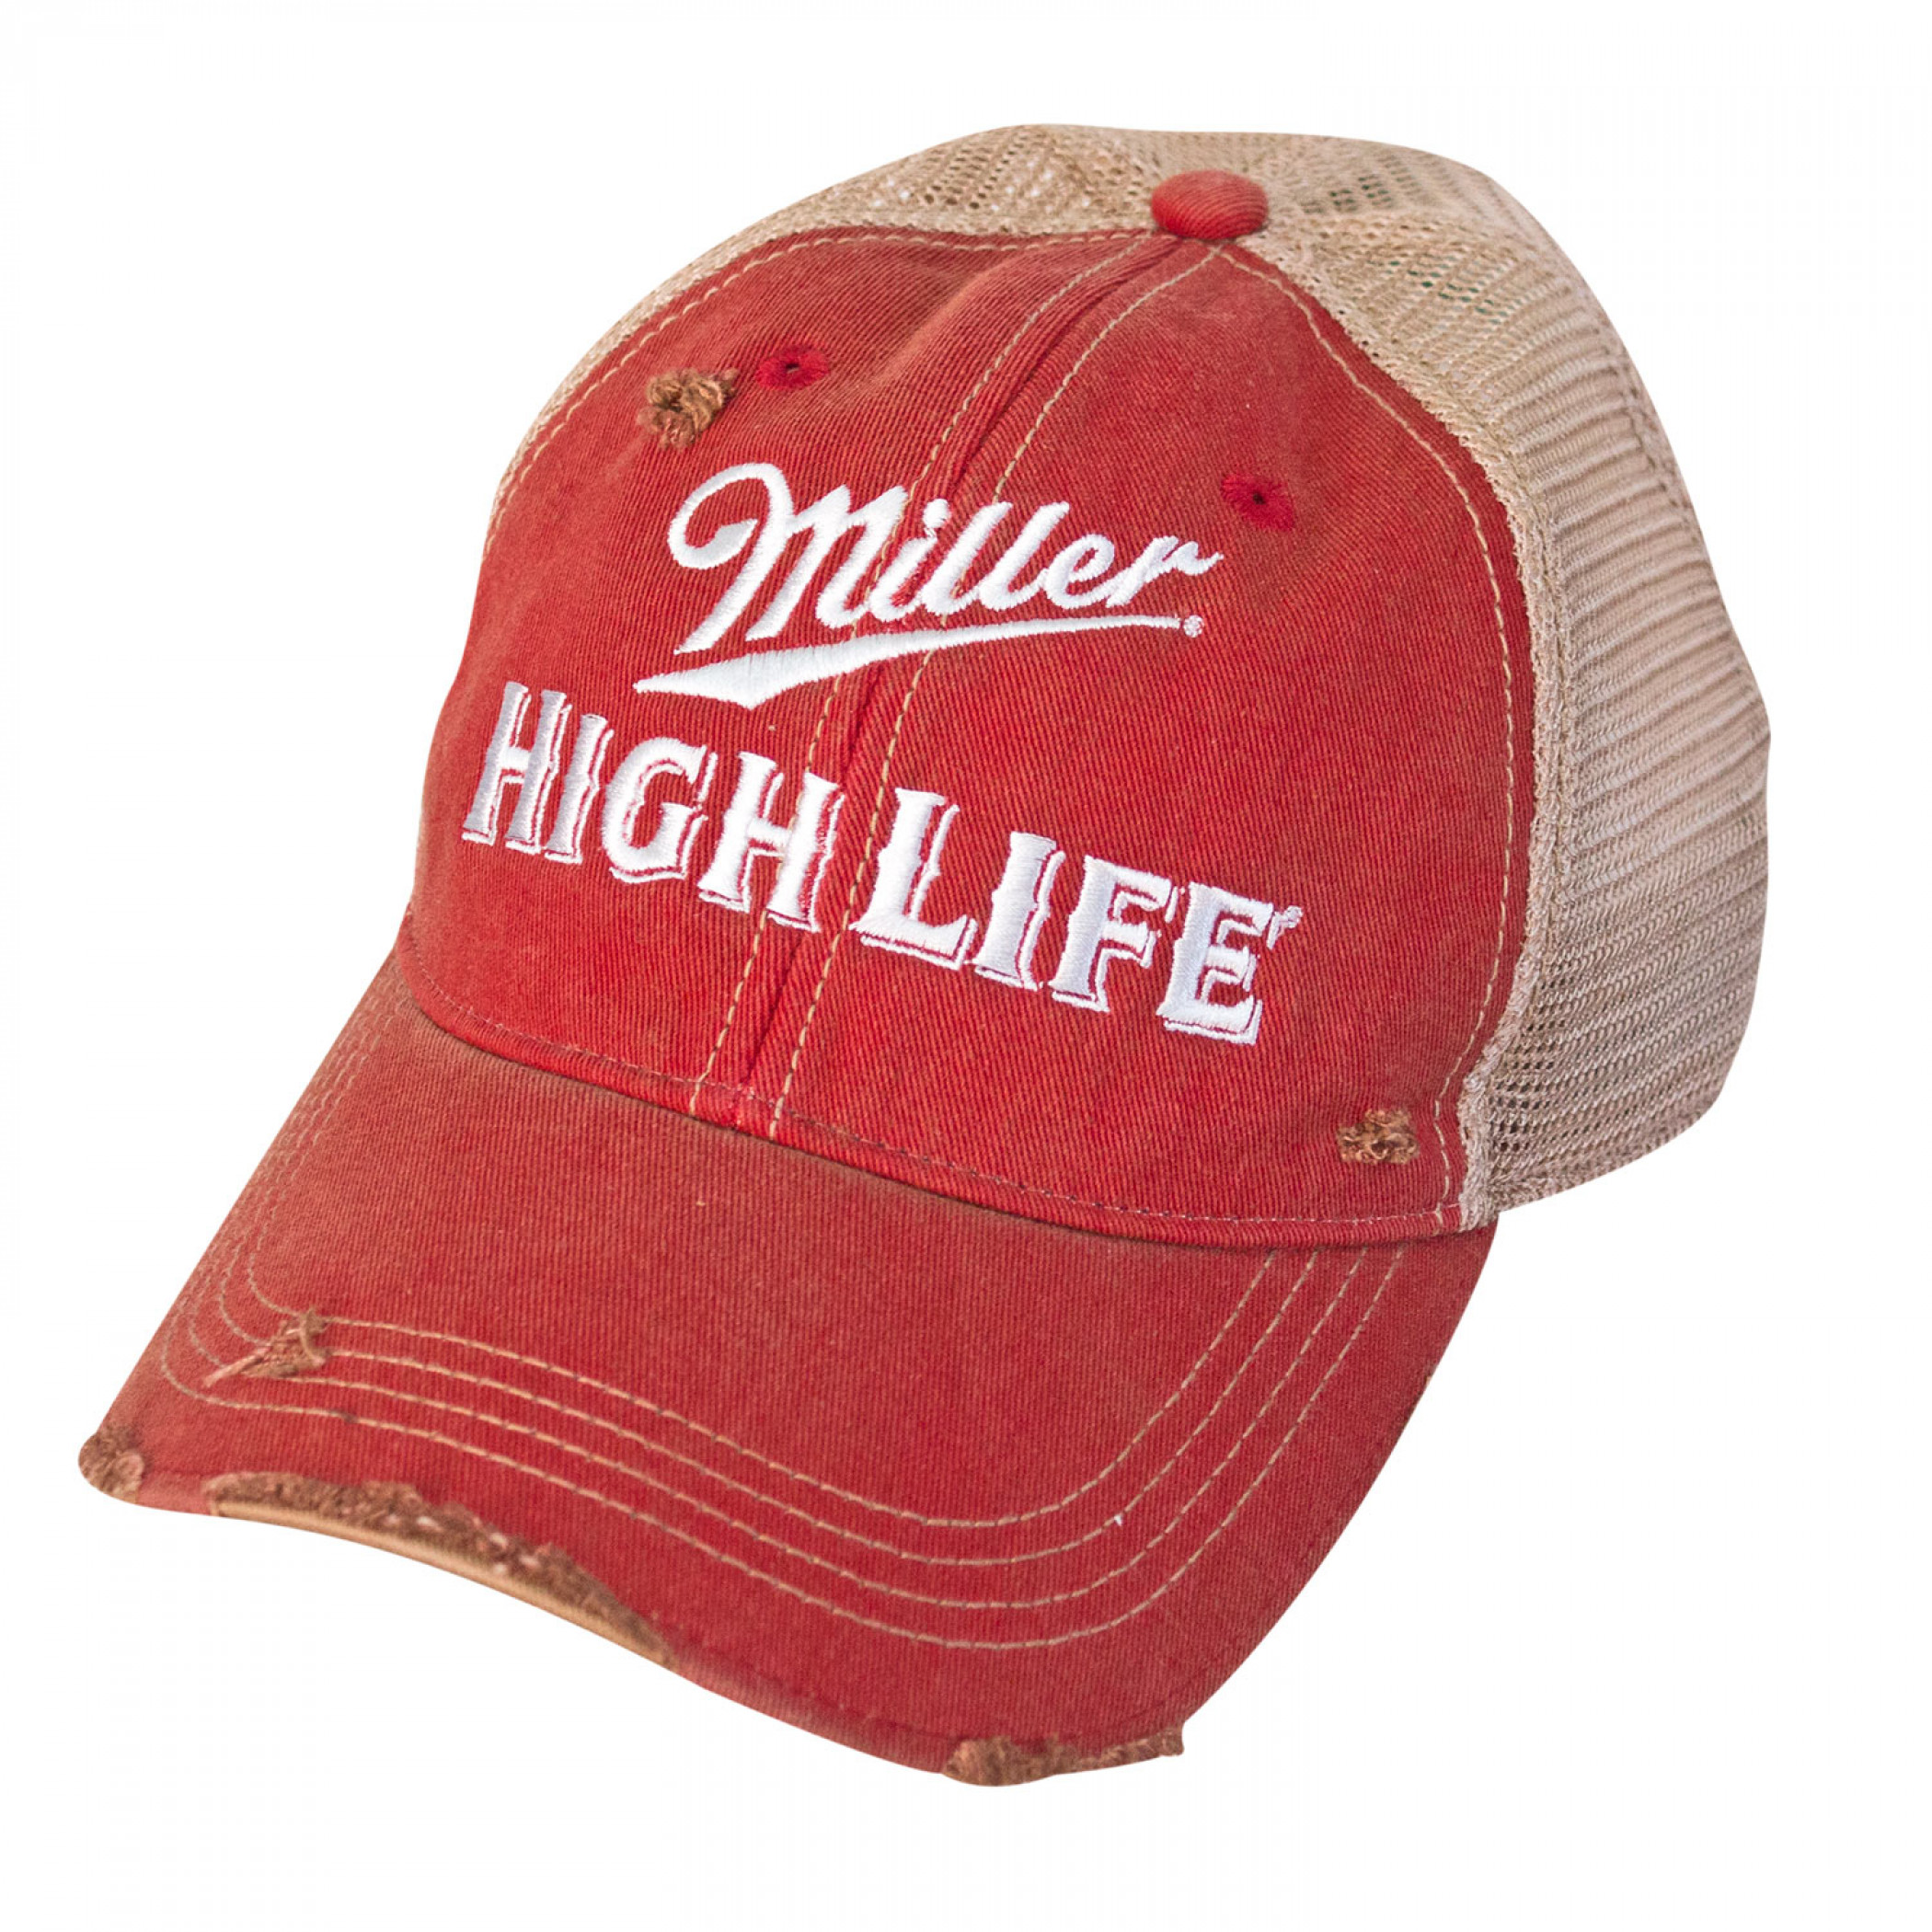 Miller High Life Vintage Mesh Hat